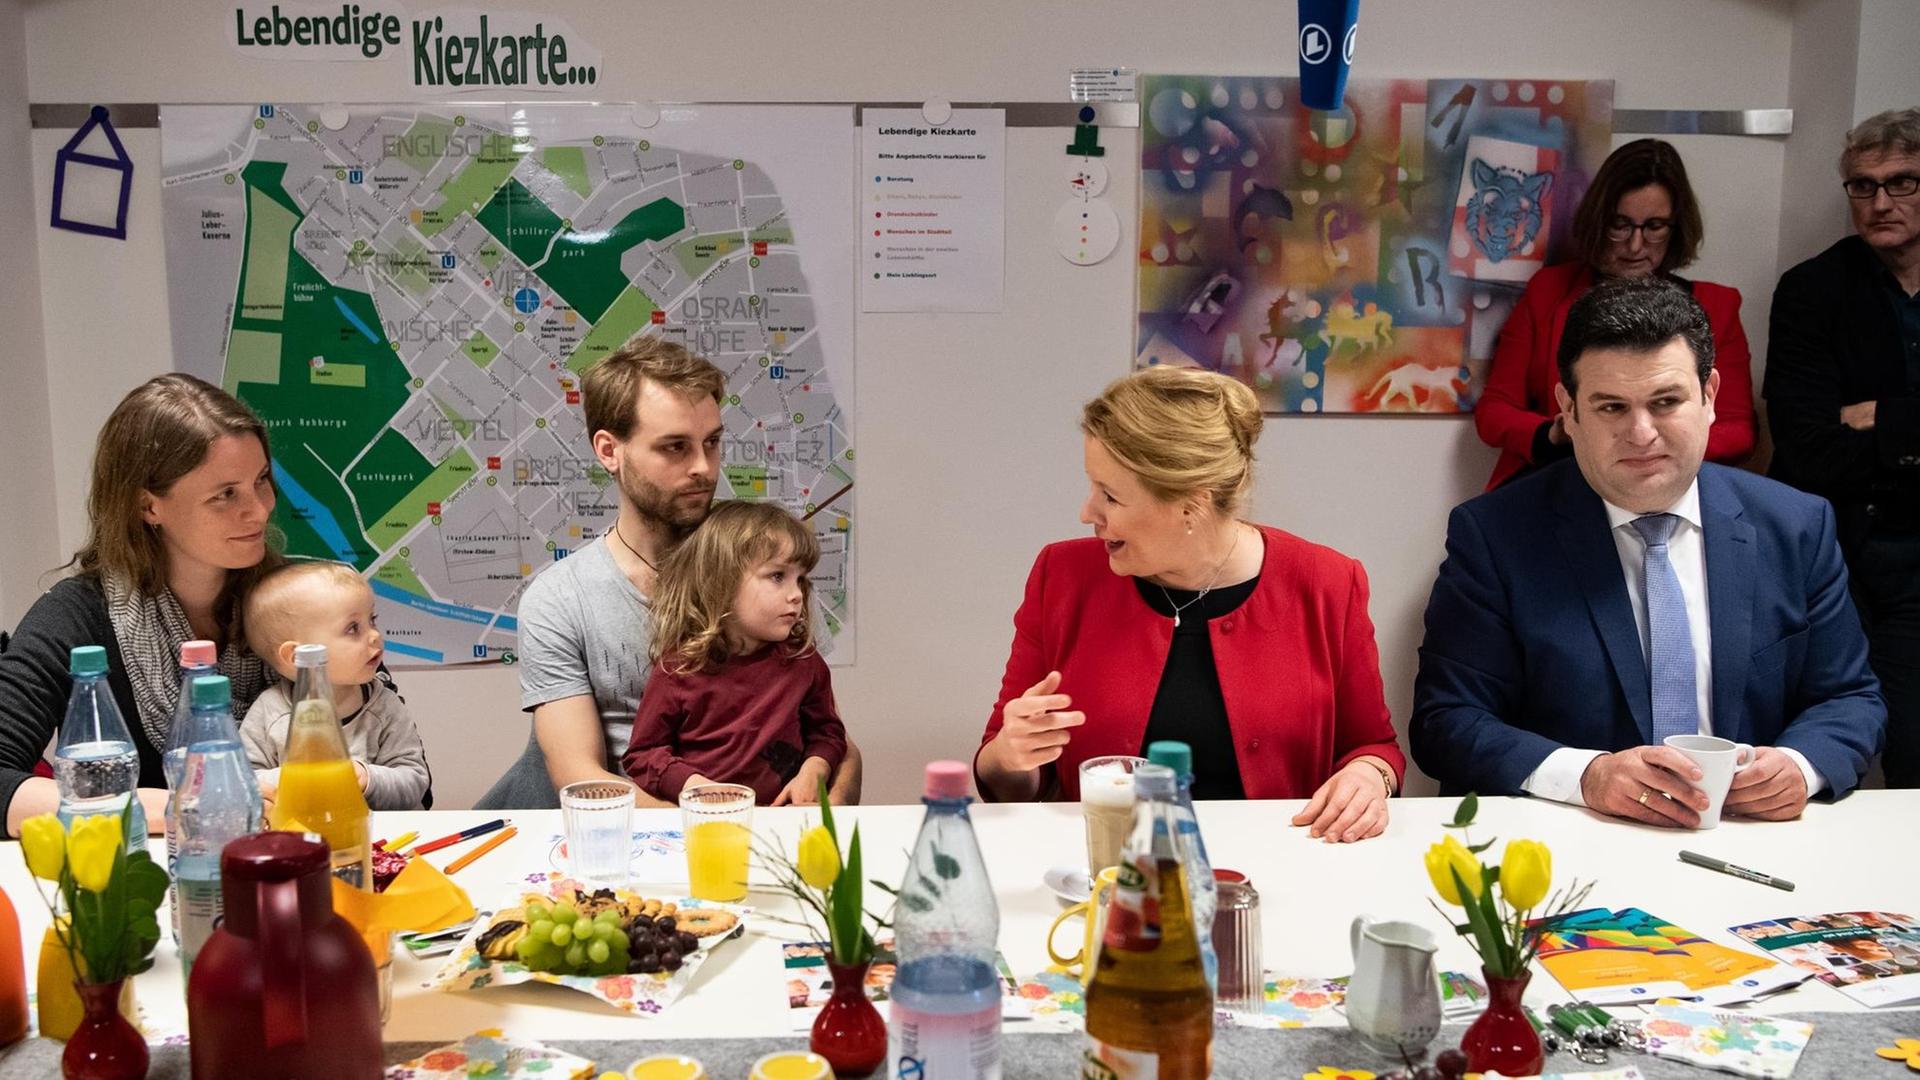 Bundesfamilienministerin Franziska Giffey (2. v. r.) und Arbeitsminister Hubertus Heil (r., beide SPD) stellen im "ZukunftsHaus Wedding" in Berlin die Pläne für das "Starke-Familien-Gesetz" vor.